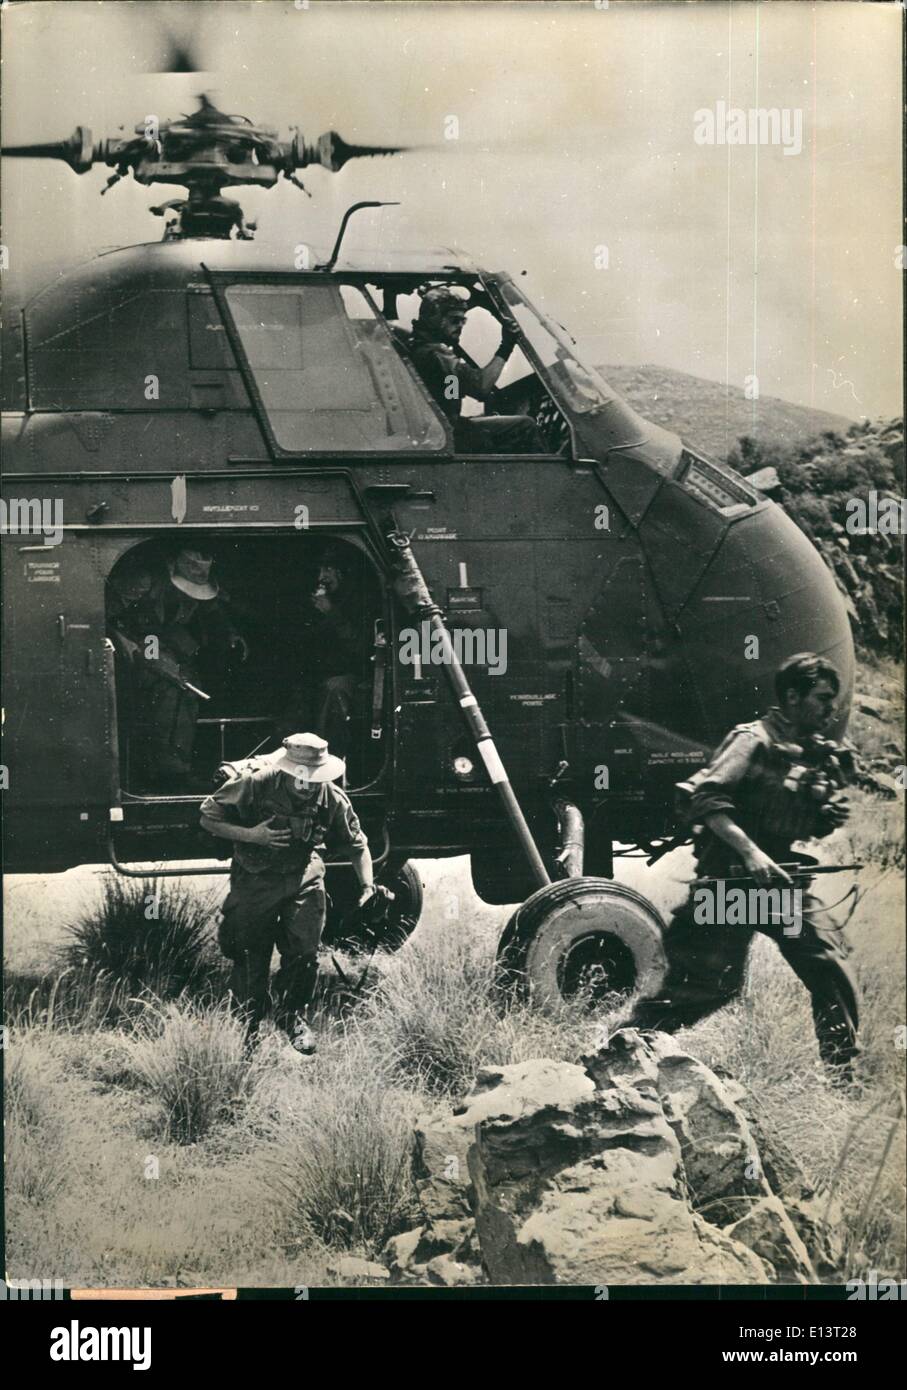 27 mar 2012 - Francese lotta contro i ribelli algerini.: l'elicottero è uno dei principali mezzi di trasporto utilizzati in Algeria. Truppe che arrivano sulla scena dell'operazione. Foto Stock